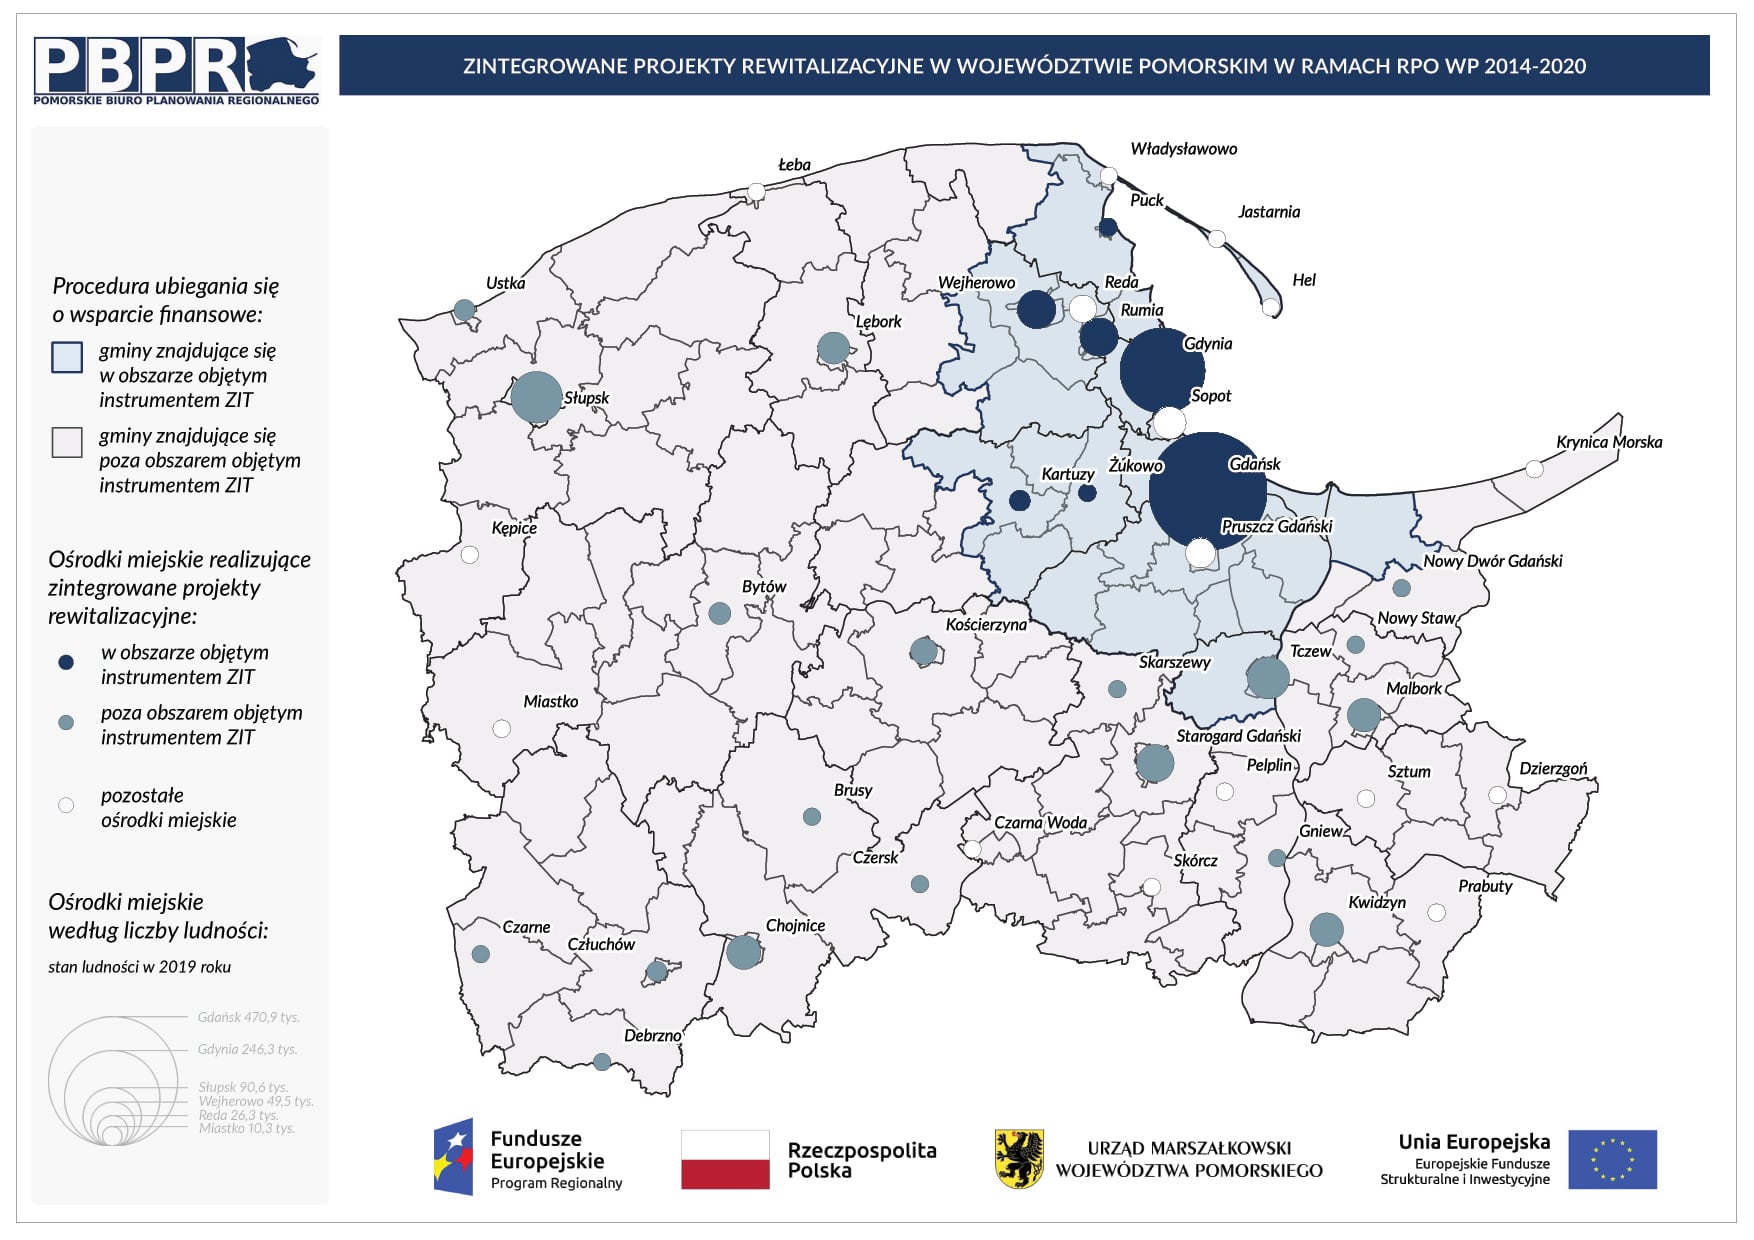 Mapa województwa pomorskiego  z zaznaczonymi gminami realizującymi zintegrowane projekty rewitalizacyjne